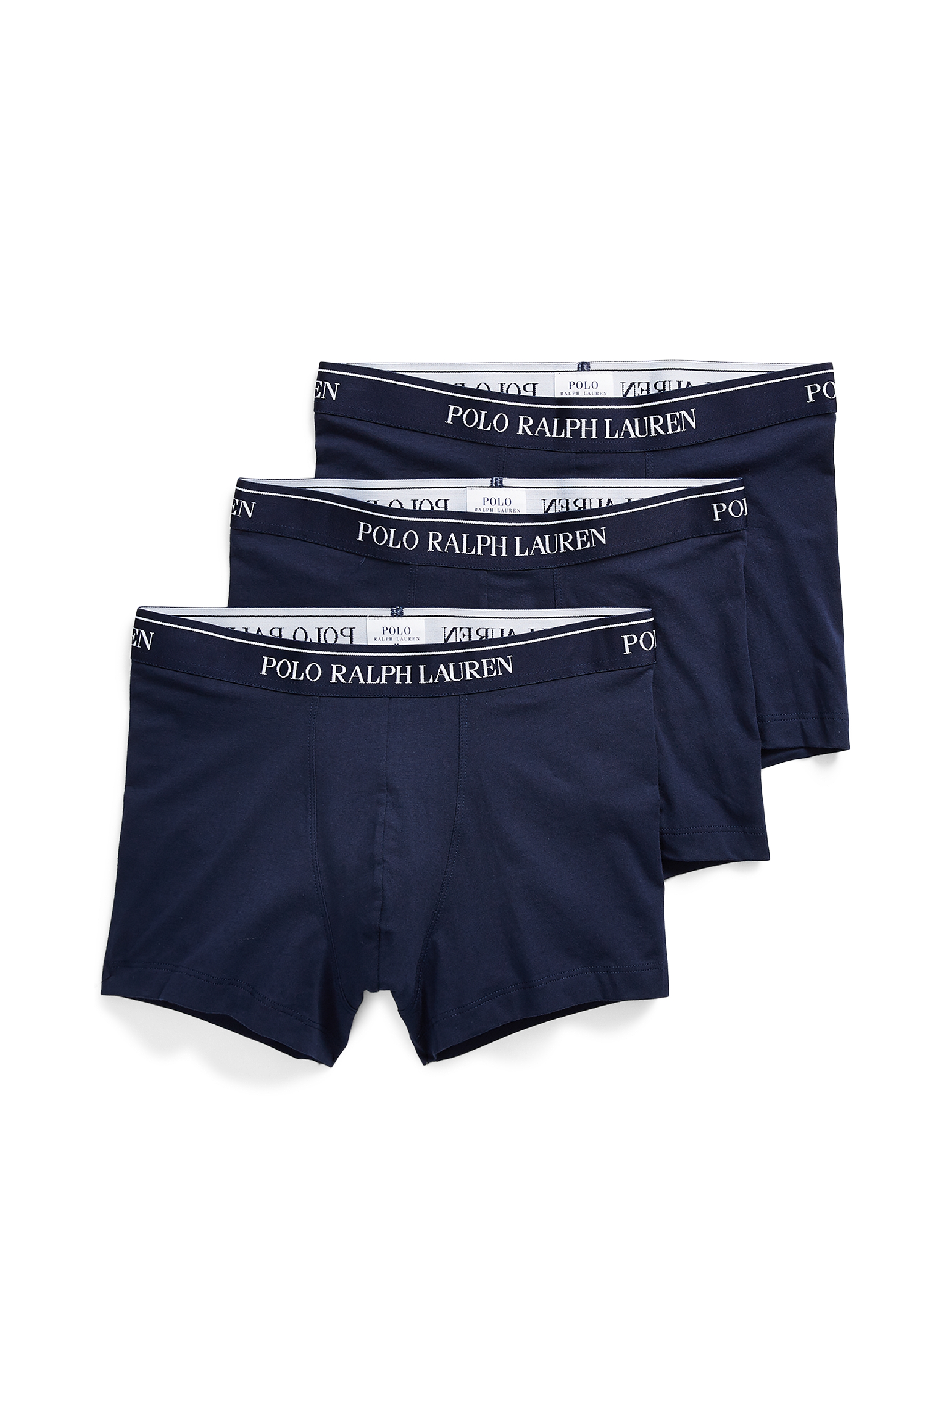 Polo Ralph Lauren 3 Pack Classic Men's Trunks